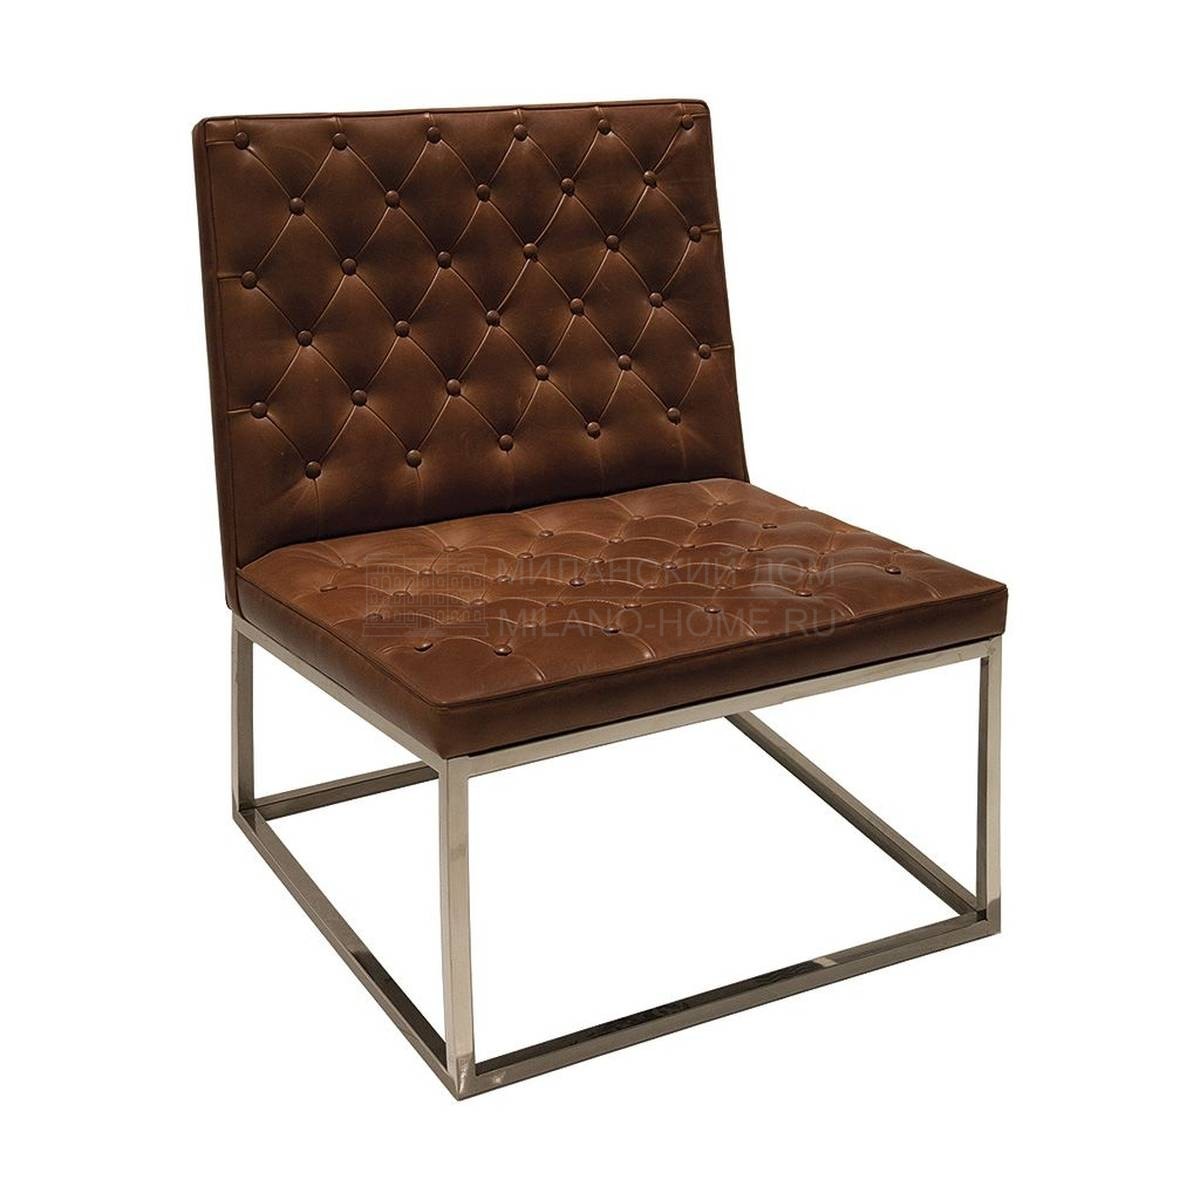 Кожаное кресло A-26018 armchair из Испании фабрики GUADARTE